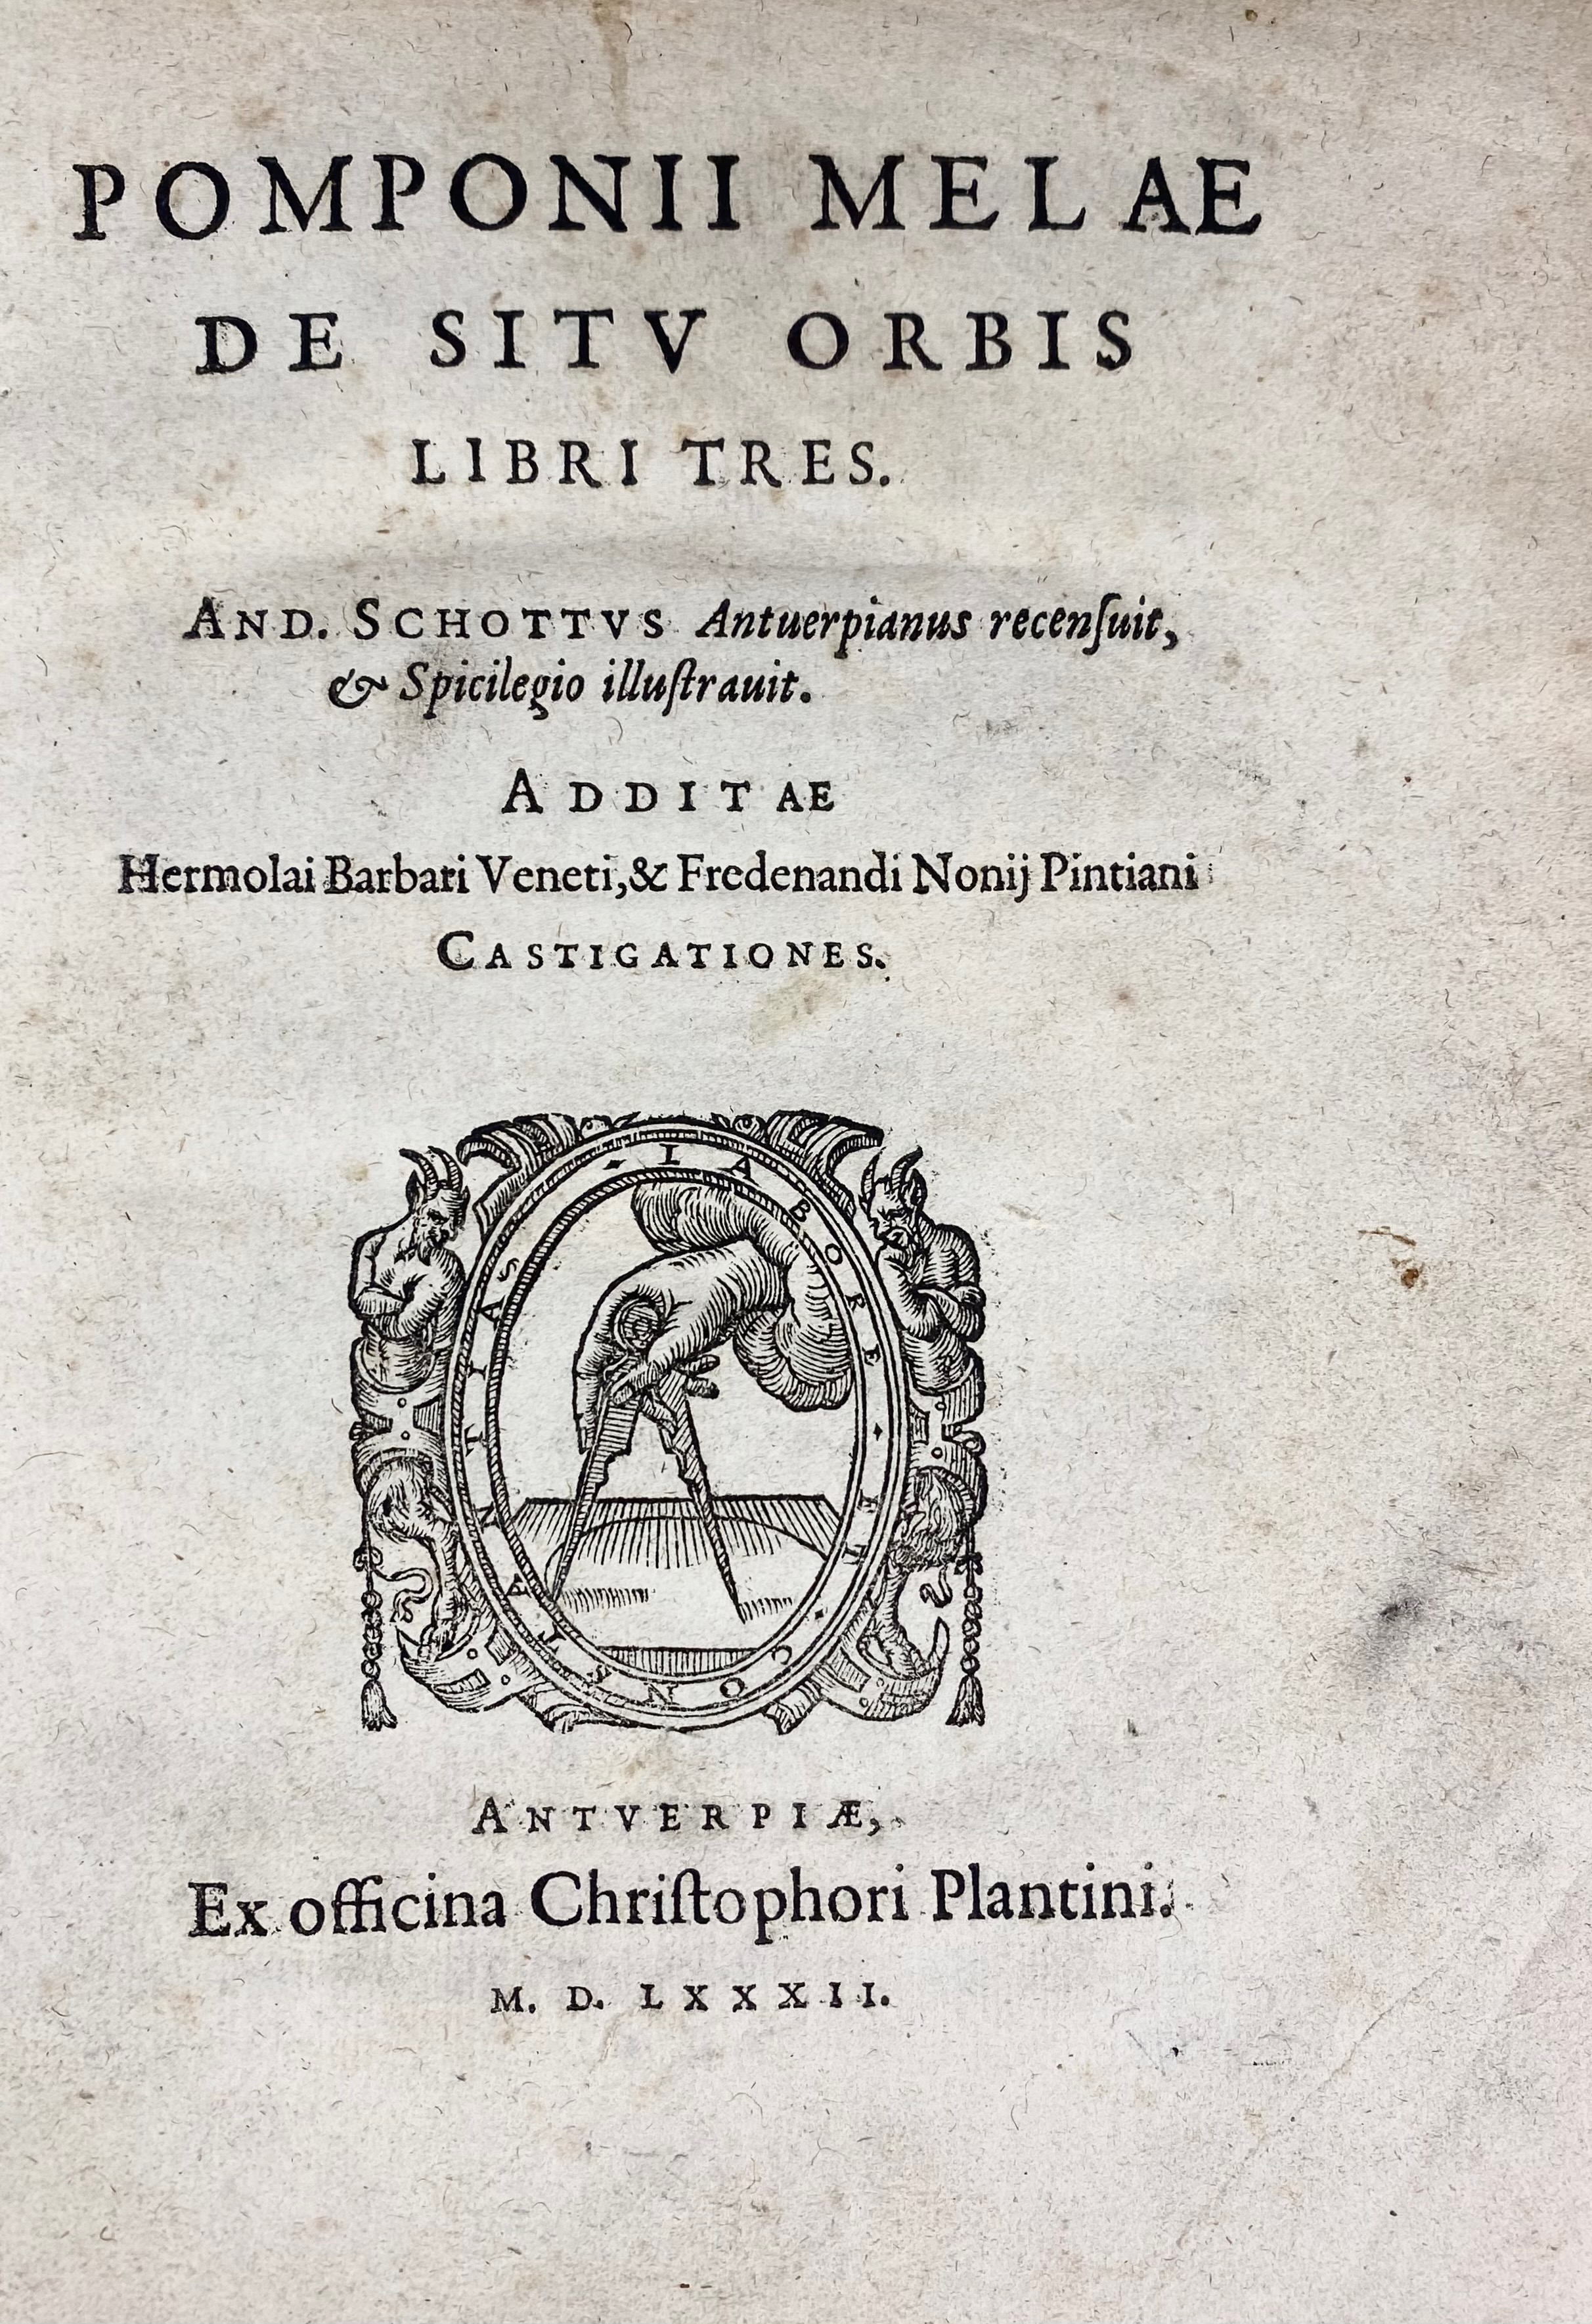 POMPONIUS MELA. De situ orbis libri tres. And. Schottus rec. & spicilgio illustr - Image 3 of 3